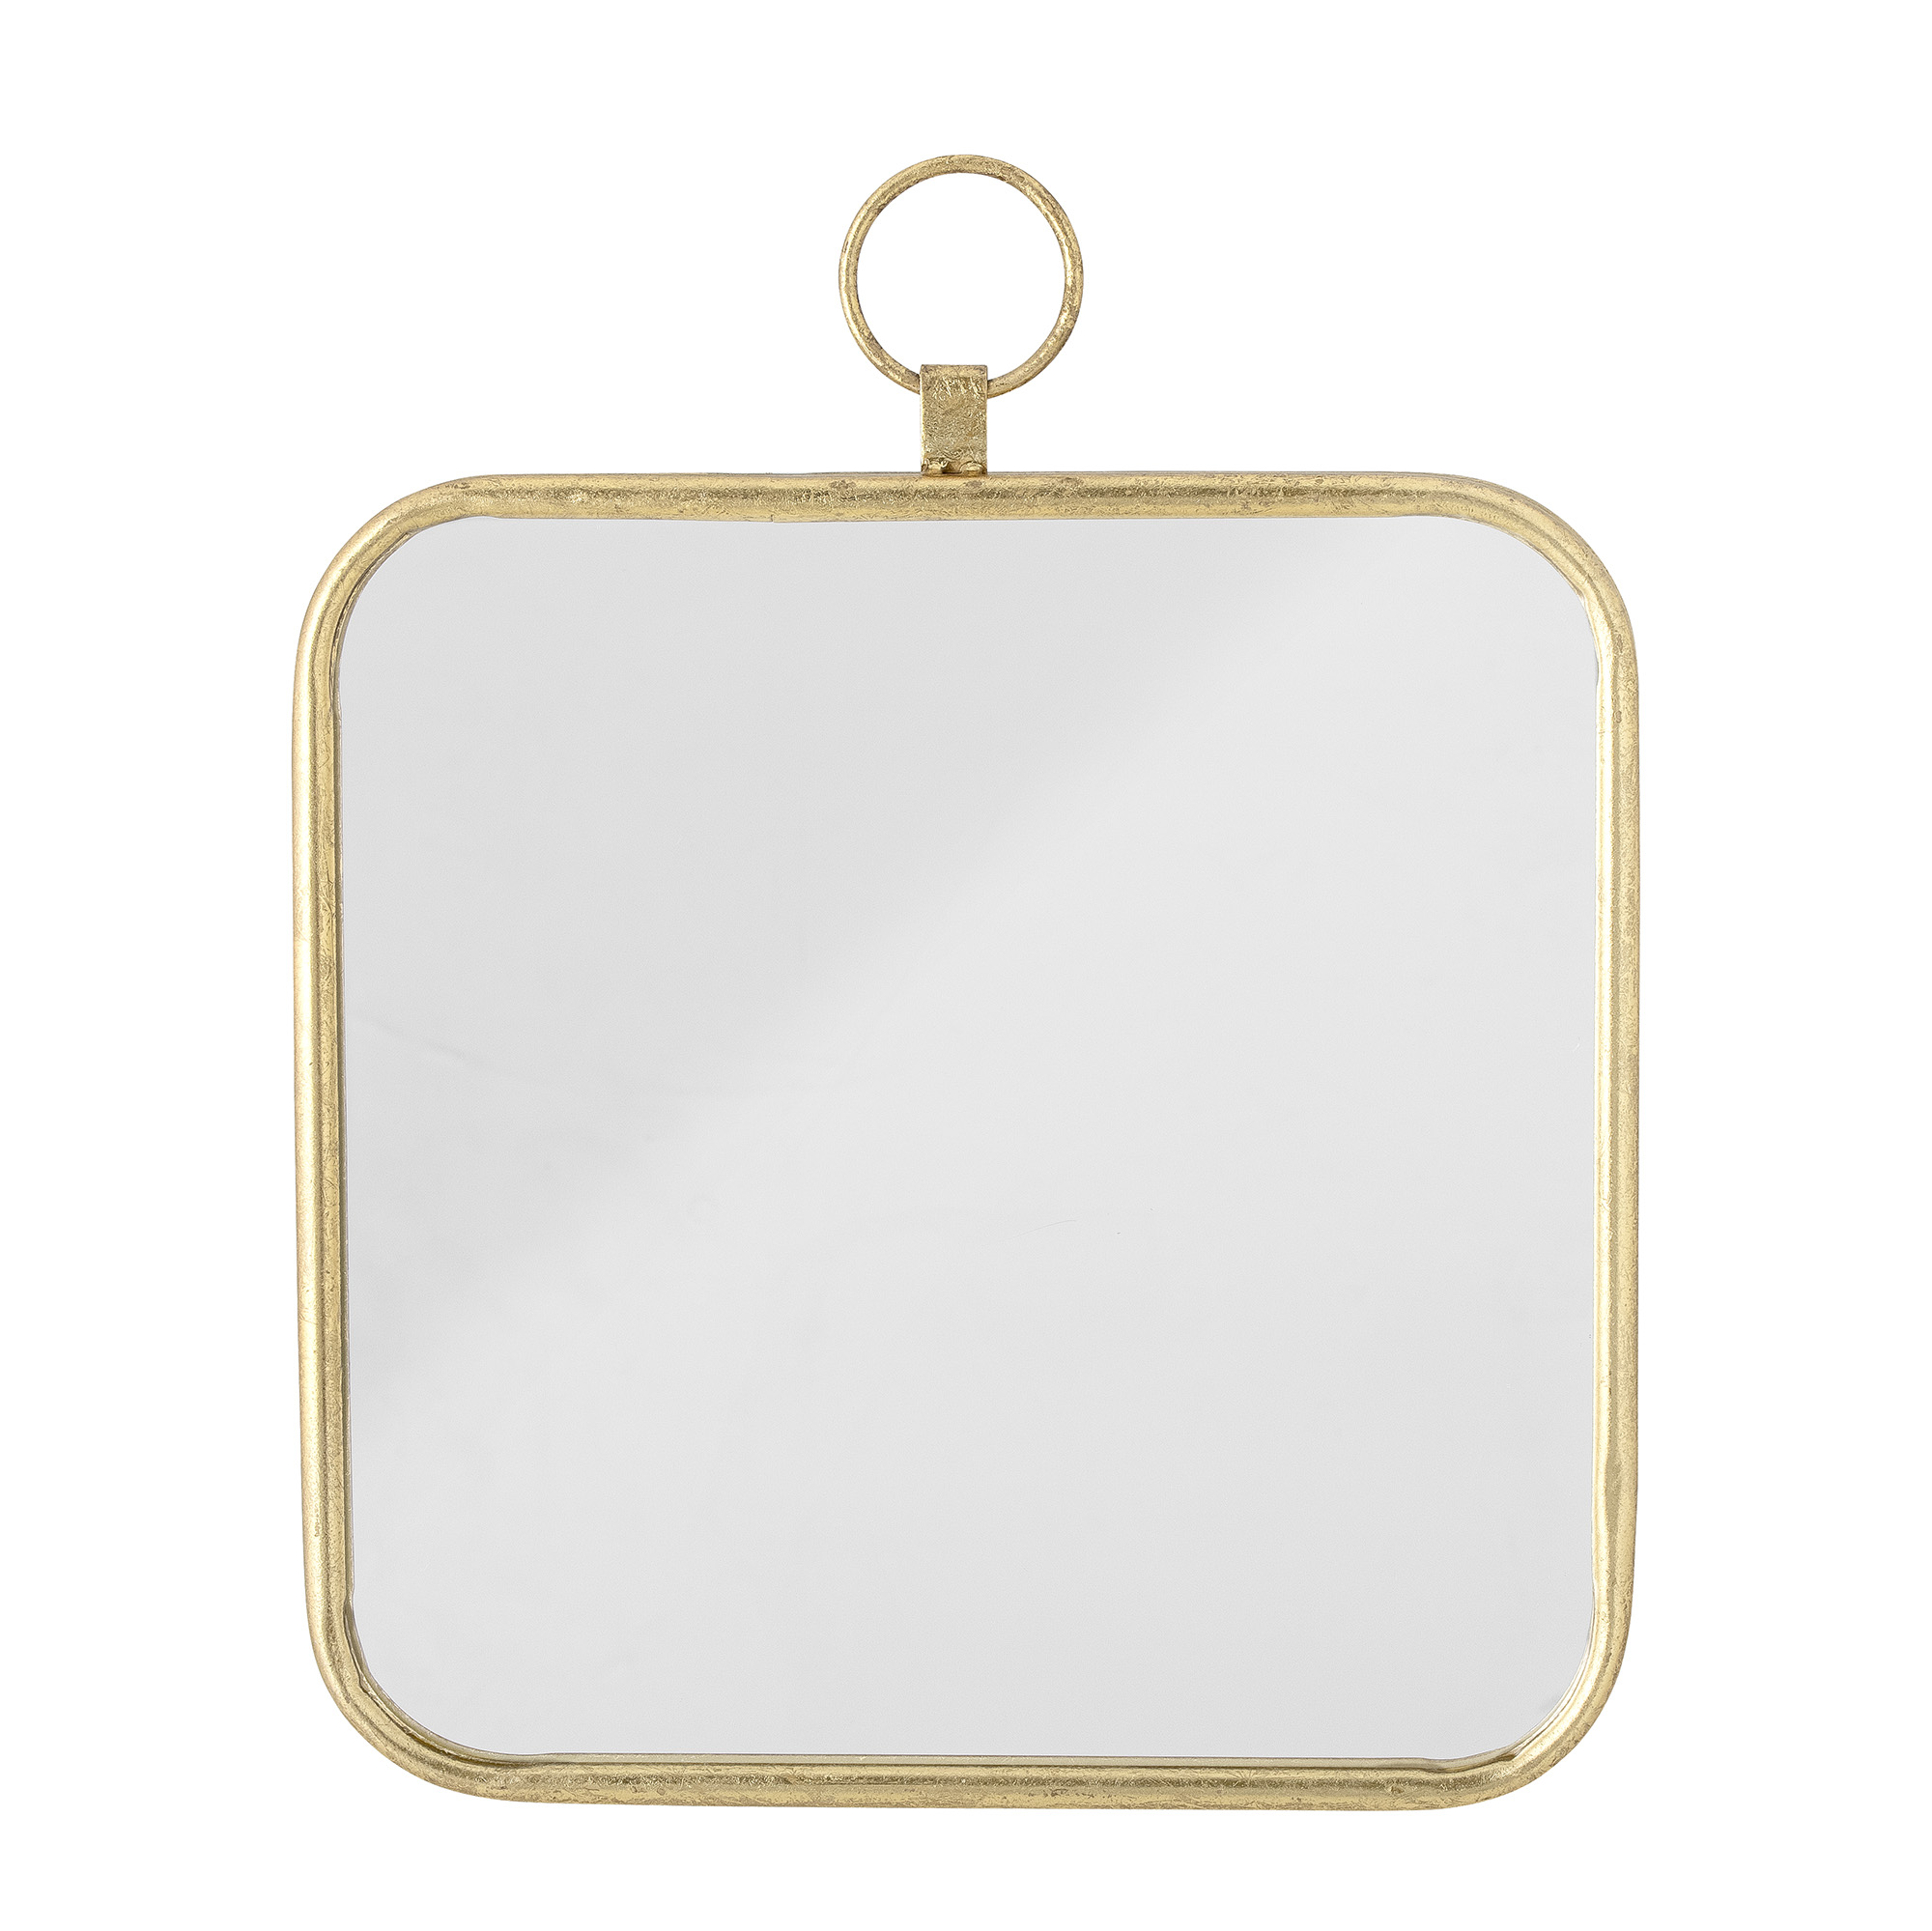 8 Stücke Goldene Metallische Spiegelleiste Für Wand